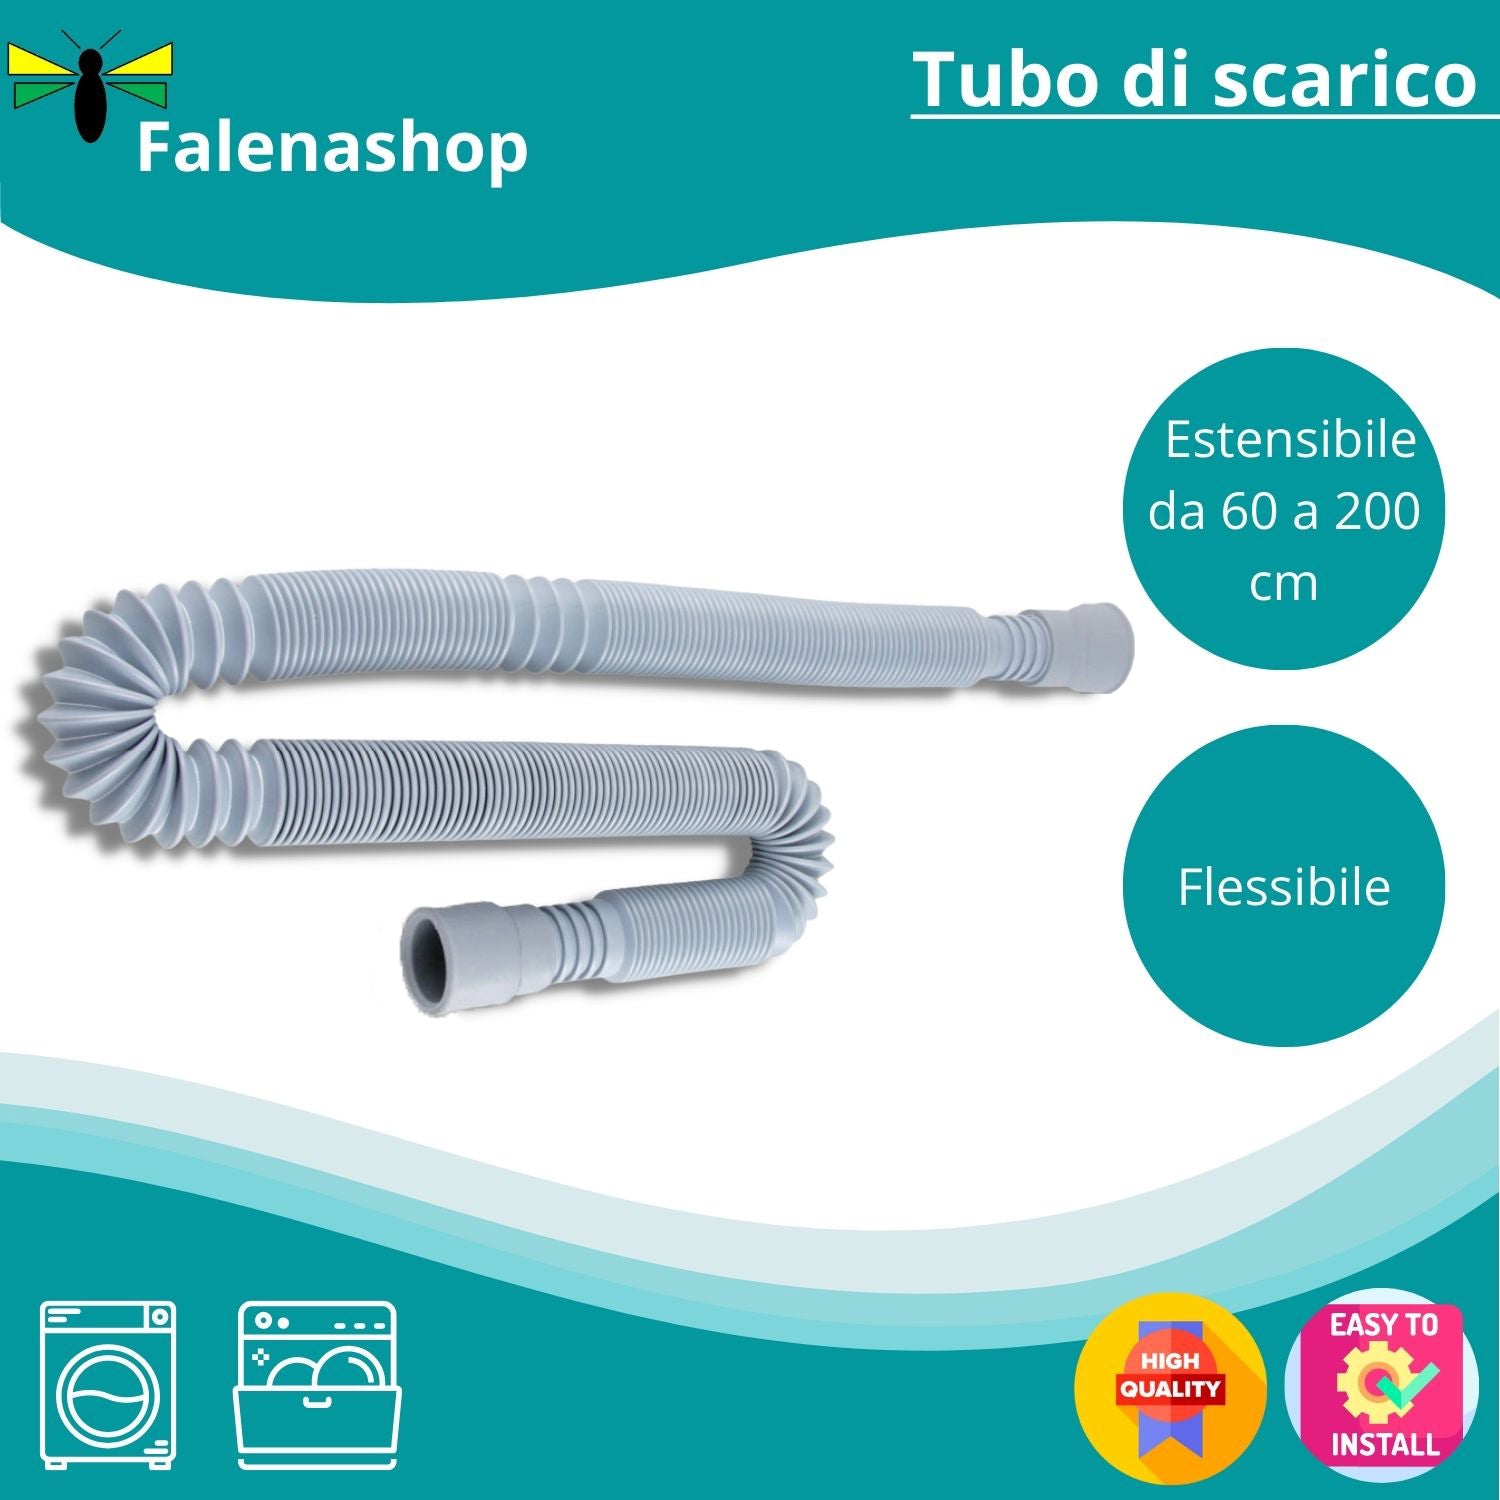 Tubo Scarico Lavatrice estensibile CM 60-200 – Tubo Scarico Lavastoviglie, Tubo Carico Lavatrice CM 200